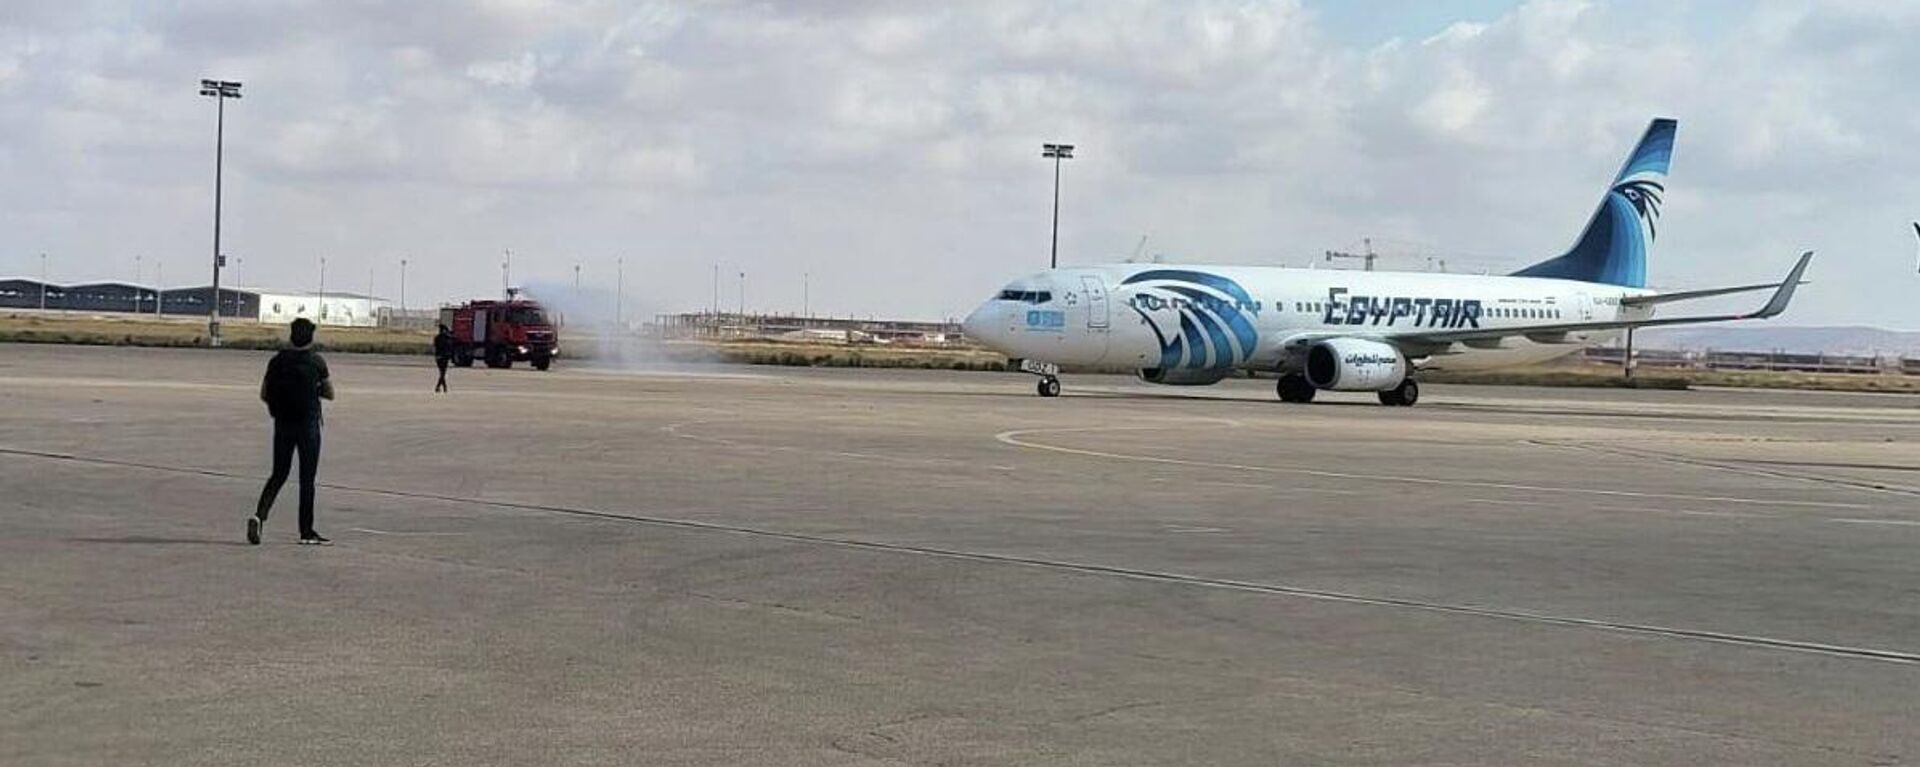 مصر للطيران تطلق أولى رحلاتها من القاهرة إلى بنغازي شرقي ليبيا - سبوتنيك عربي, 1920, 18.04.2022